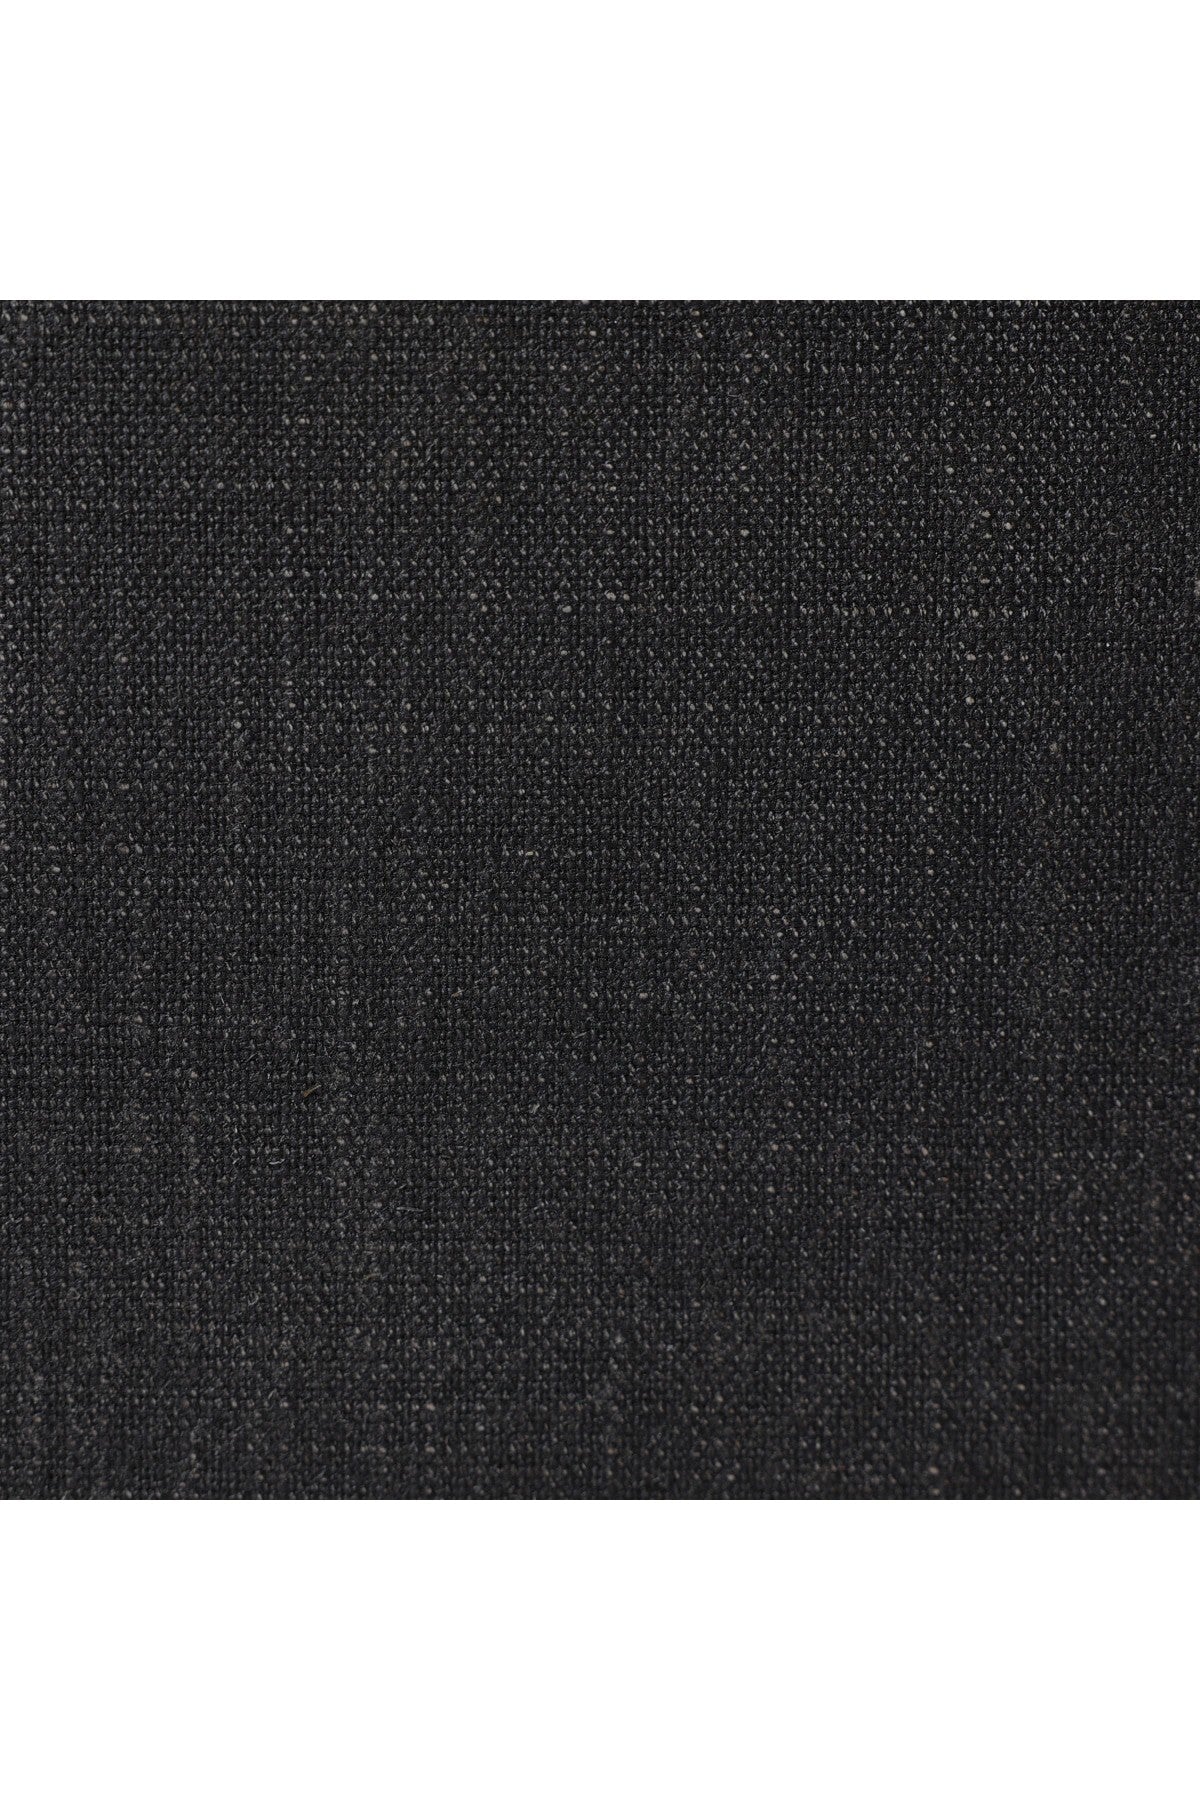 Crescio Sideboard - Black Linen